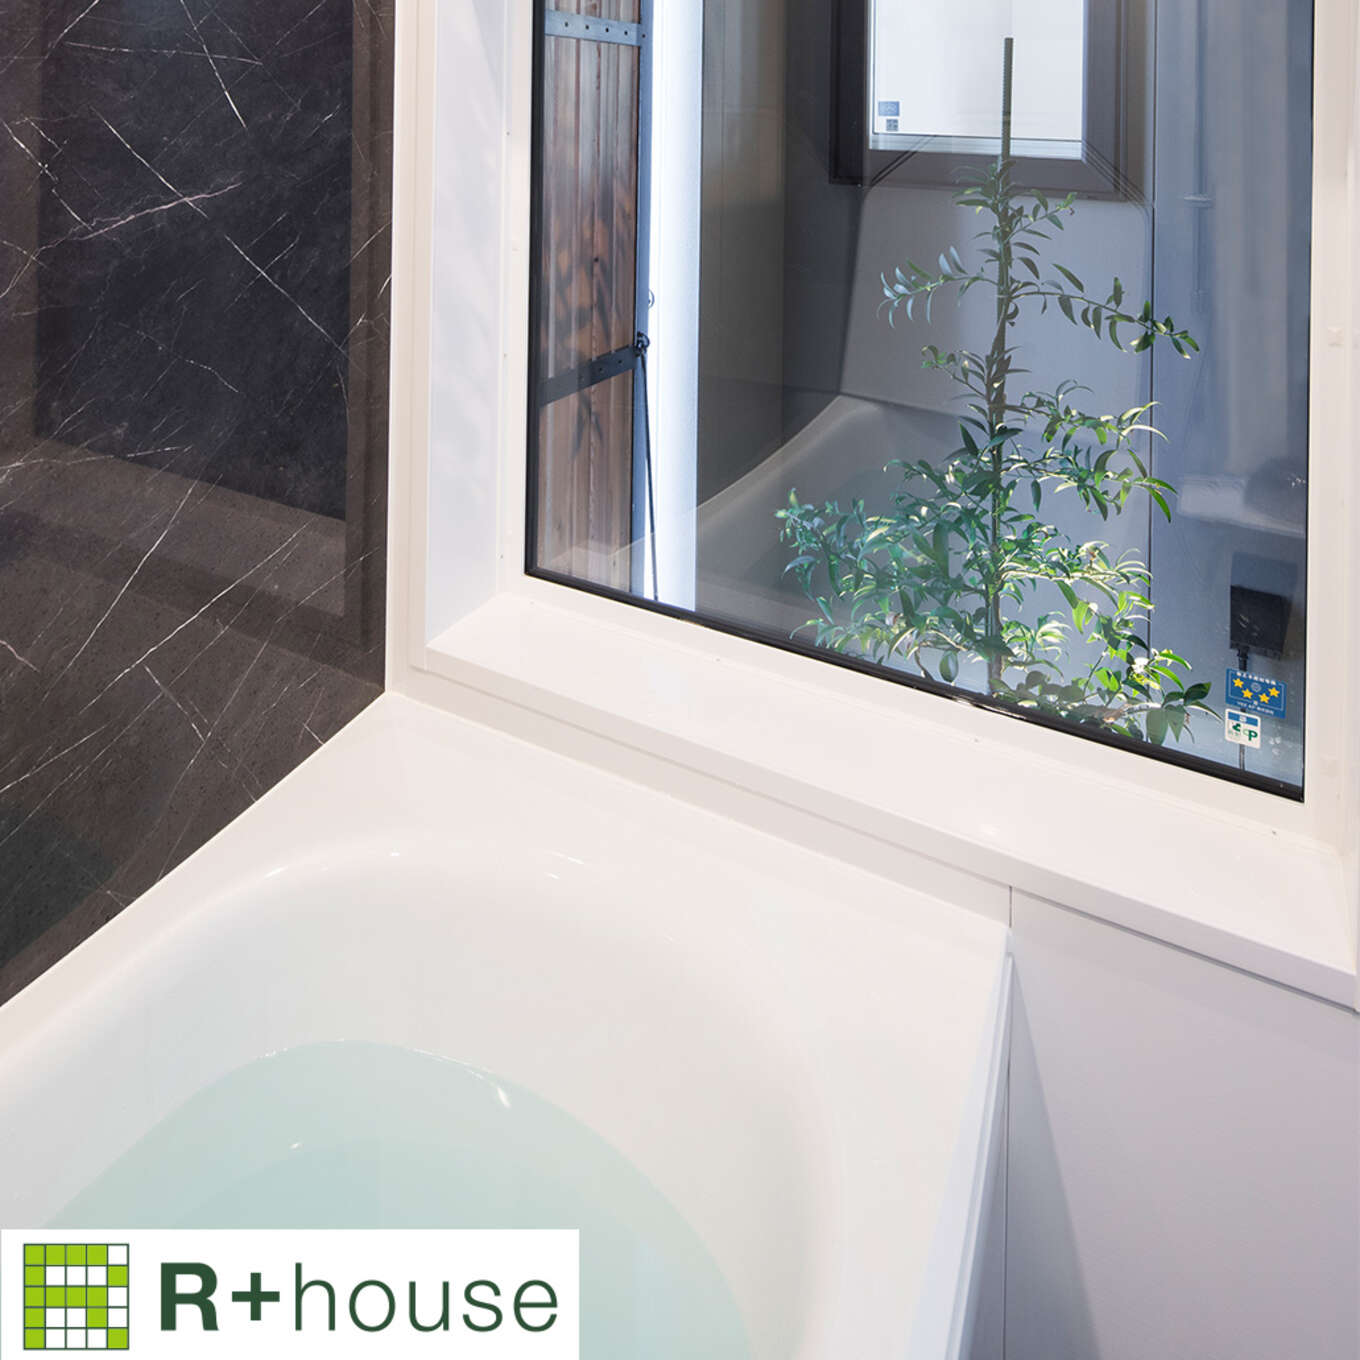 R+houseの物件の浴室の写真です。浴室にある窓からはバスコートにある緑が見える。